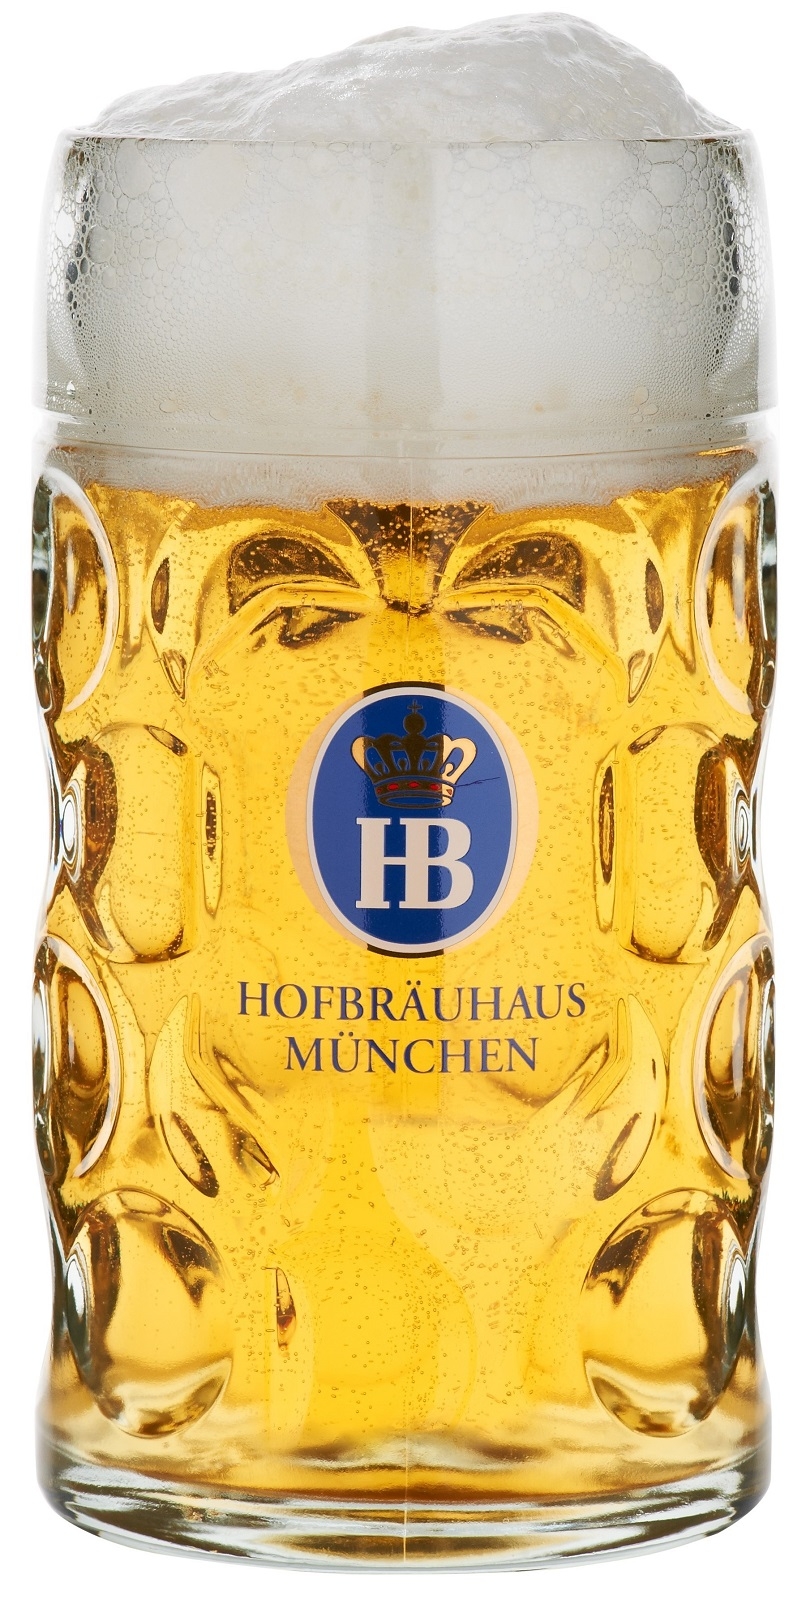 Hofbrauhaus Munchen Munich German Glass Dimple Beer Mug .5 L